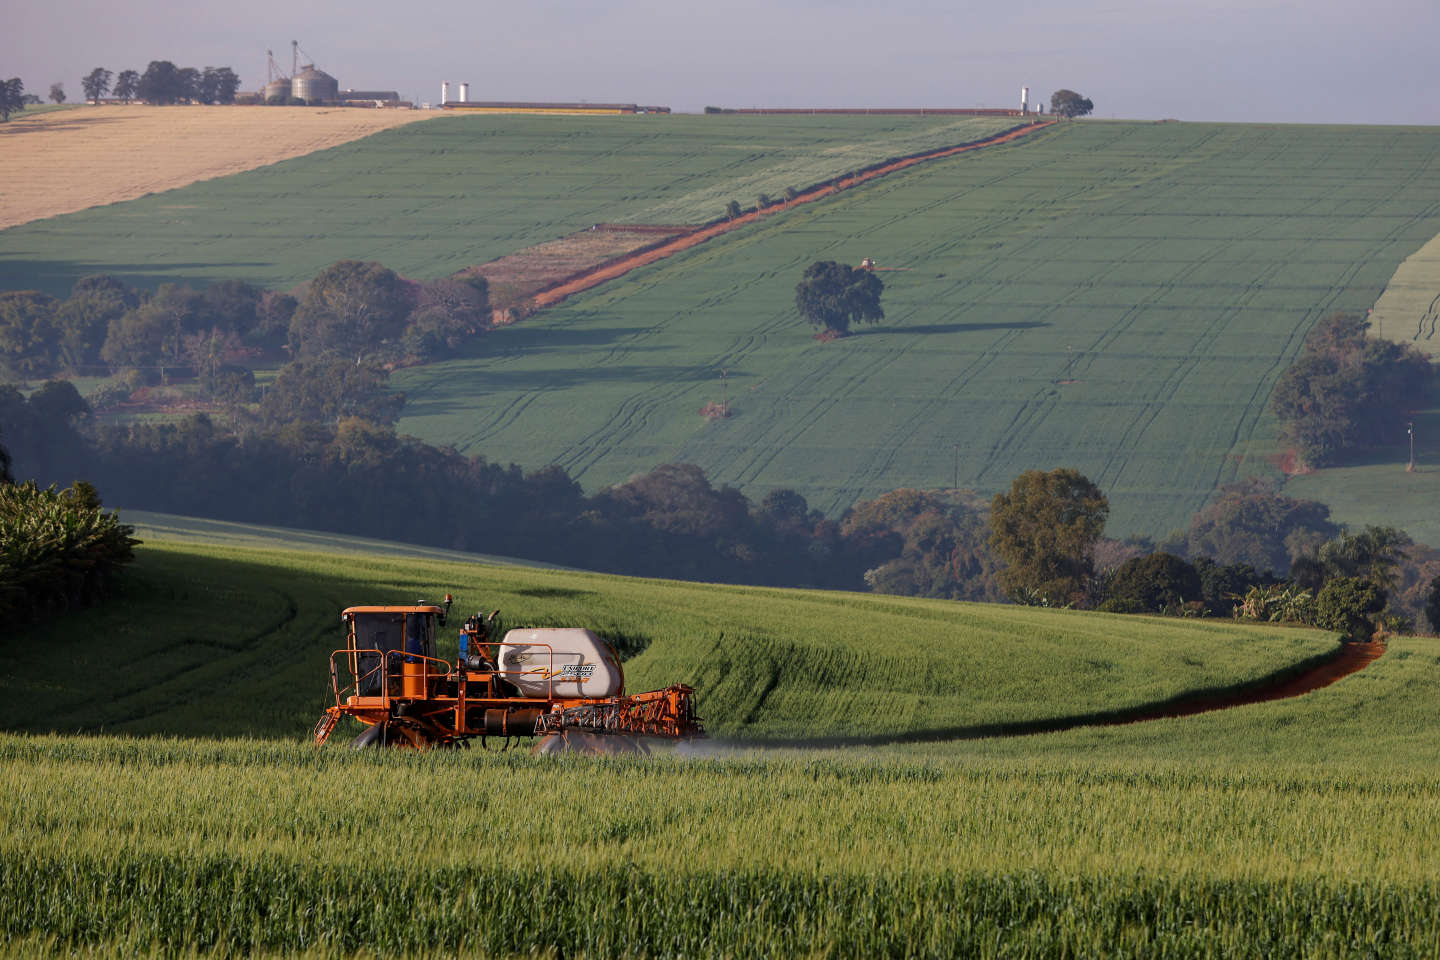 La France continue à exporter des milliers de tonnes de pesticides ultratoxiques, malgré l’interdiction de cette pratique